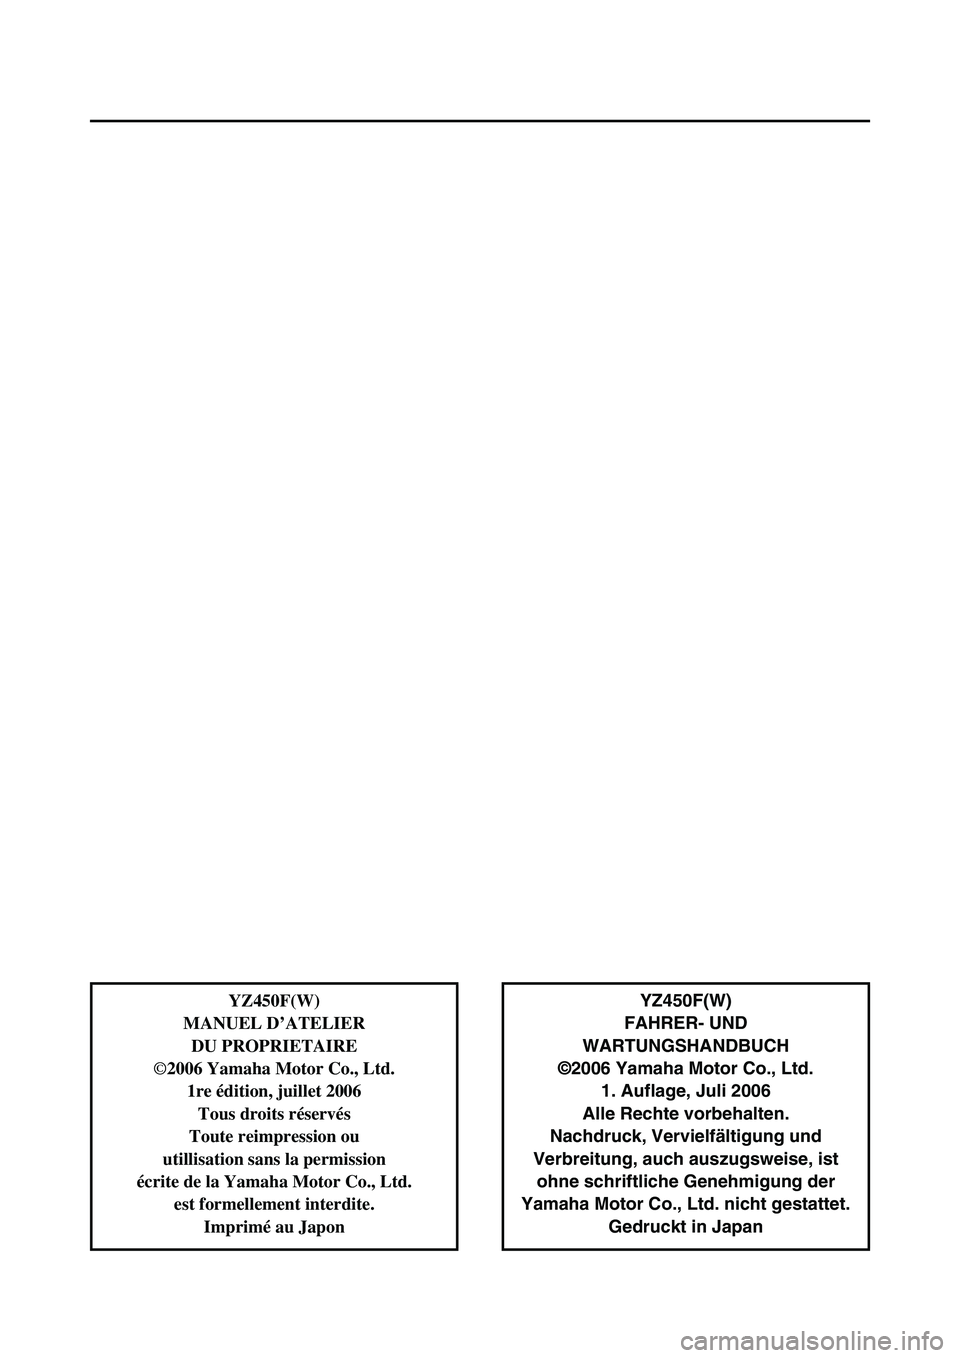 YAMAHA YZ450F 2007  Owners Manual YZ450F(W)
FAHRER- UND 
WARTUNGSHANDBUCH
©2006 Yamaha Motor Co., Ltd.
1. Auflage, Juli 2006
Alle Rechte vorbehalten.
Nachdruck, Vervielfältigung und
Verbreitung, auch auszugsweise, ist
ohne schriftli